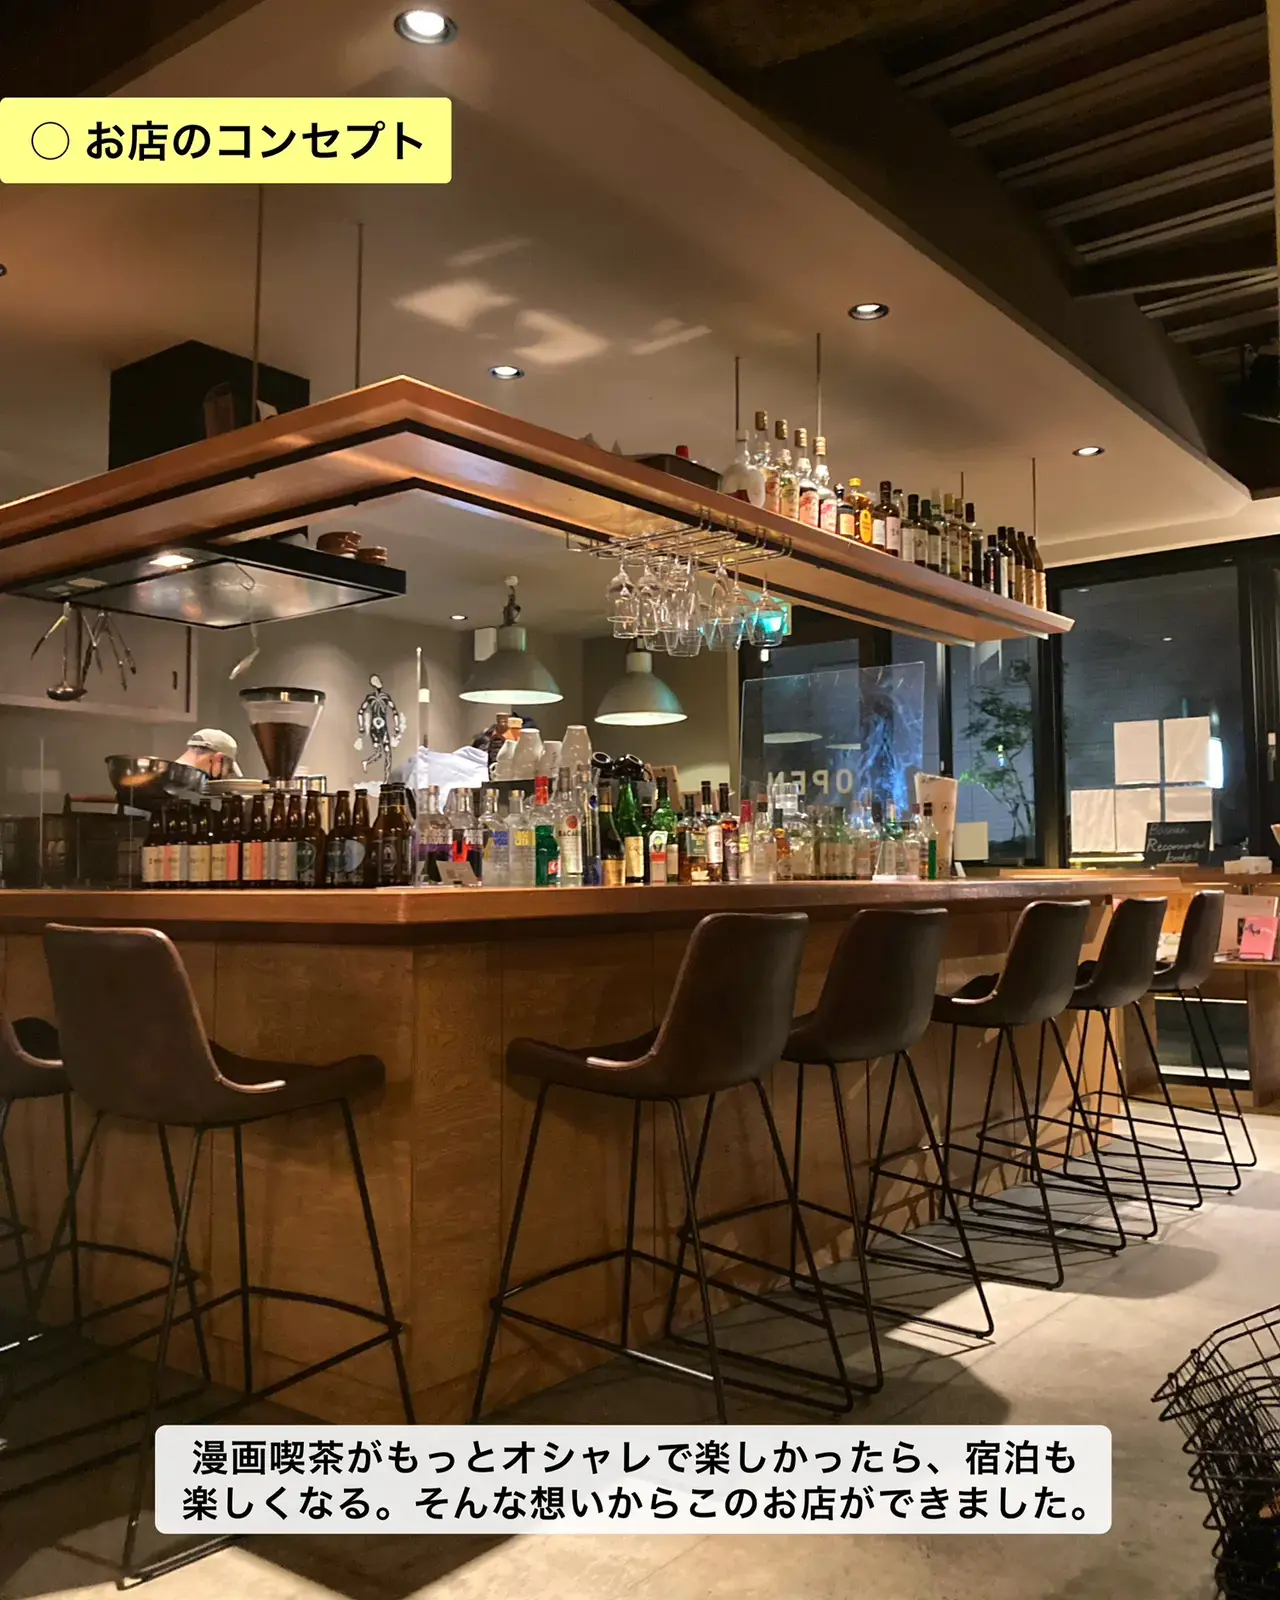 デートにもおすすめ 雰囲気抜群の町田カフェ ゆき カフェ巡り 東京 神奈川が投稿したフォトブック Lemon8